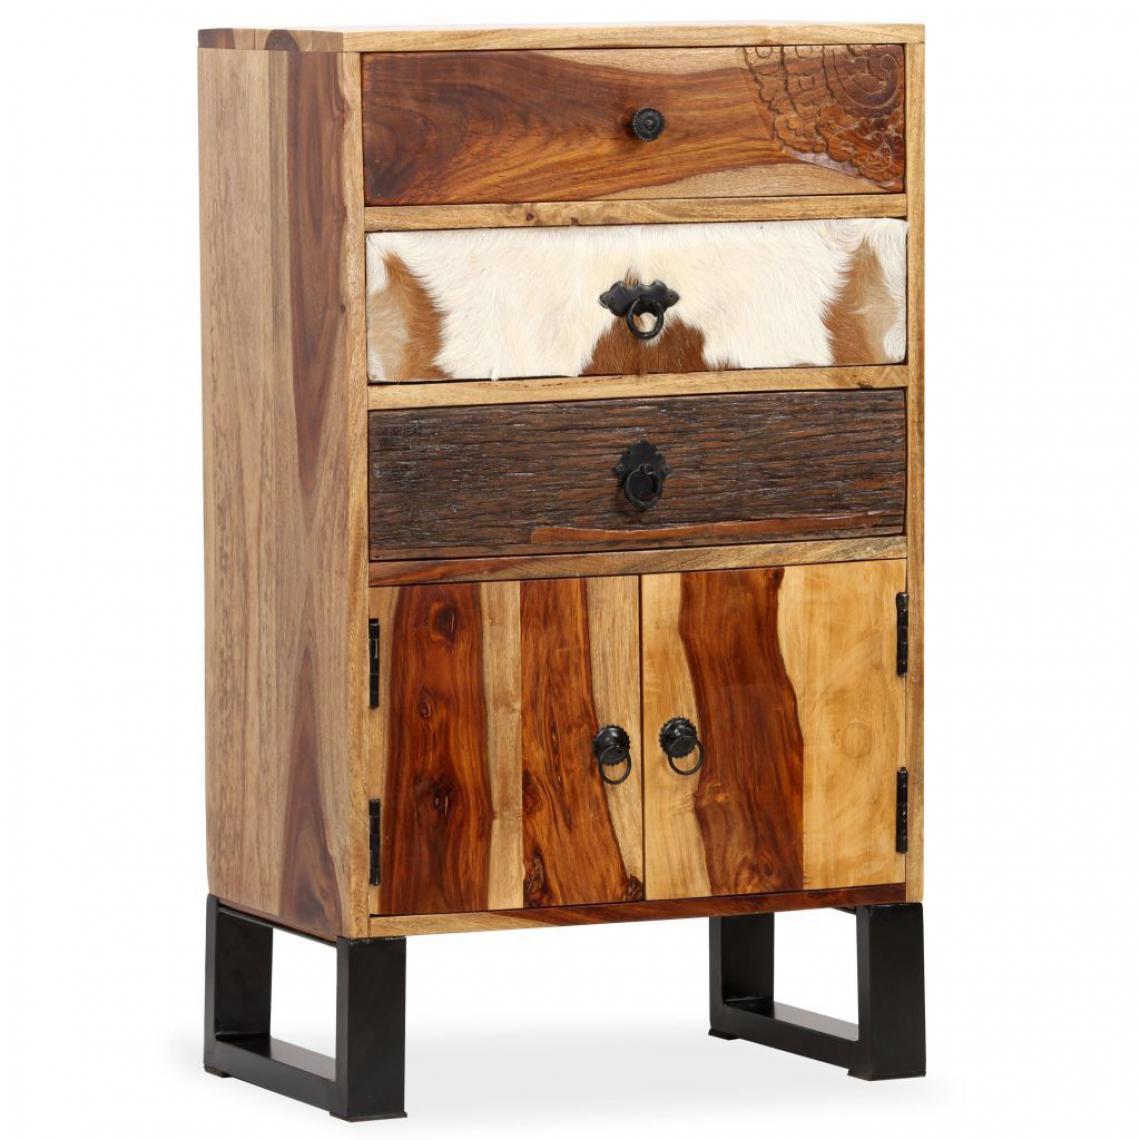 Helloshop26 - Buffet bahut armoire console meuble de rangement bois massif de sesham 86 cm 4402101 - Consoles